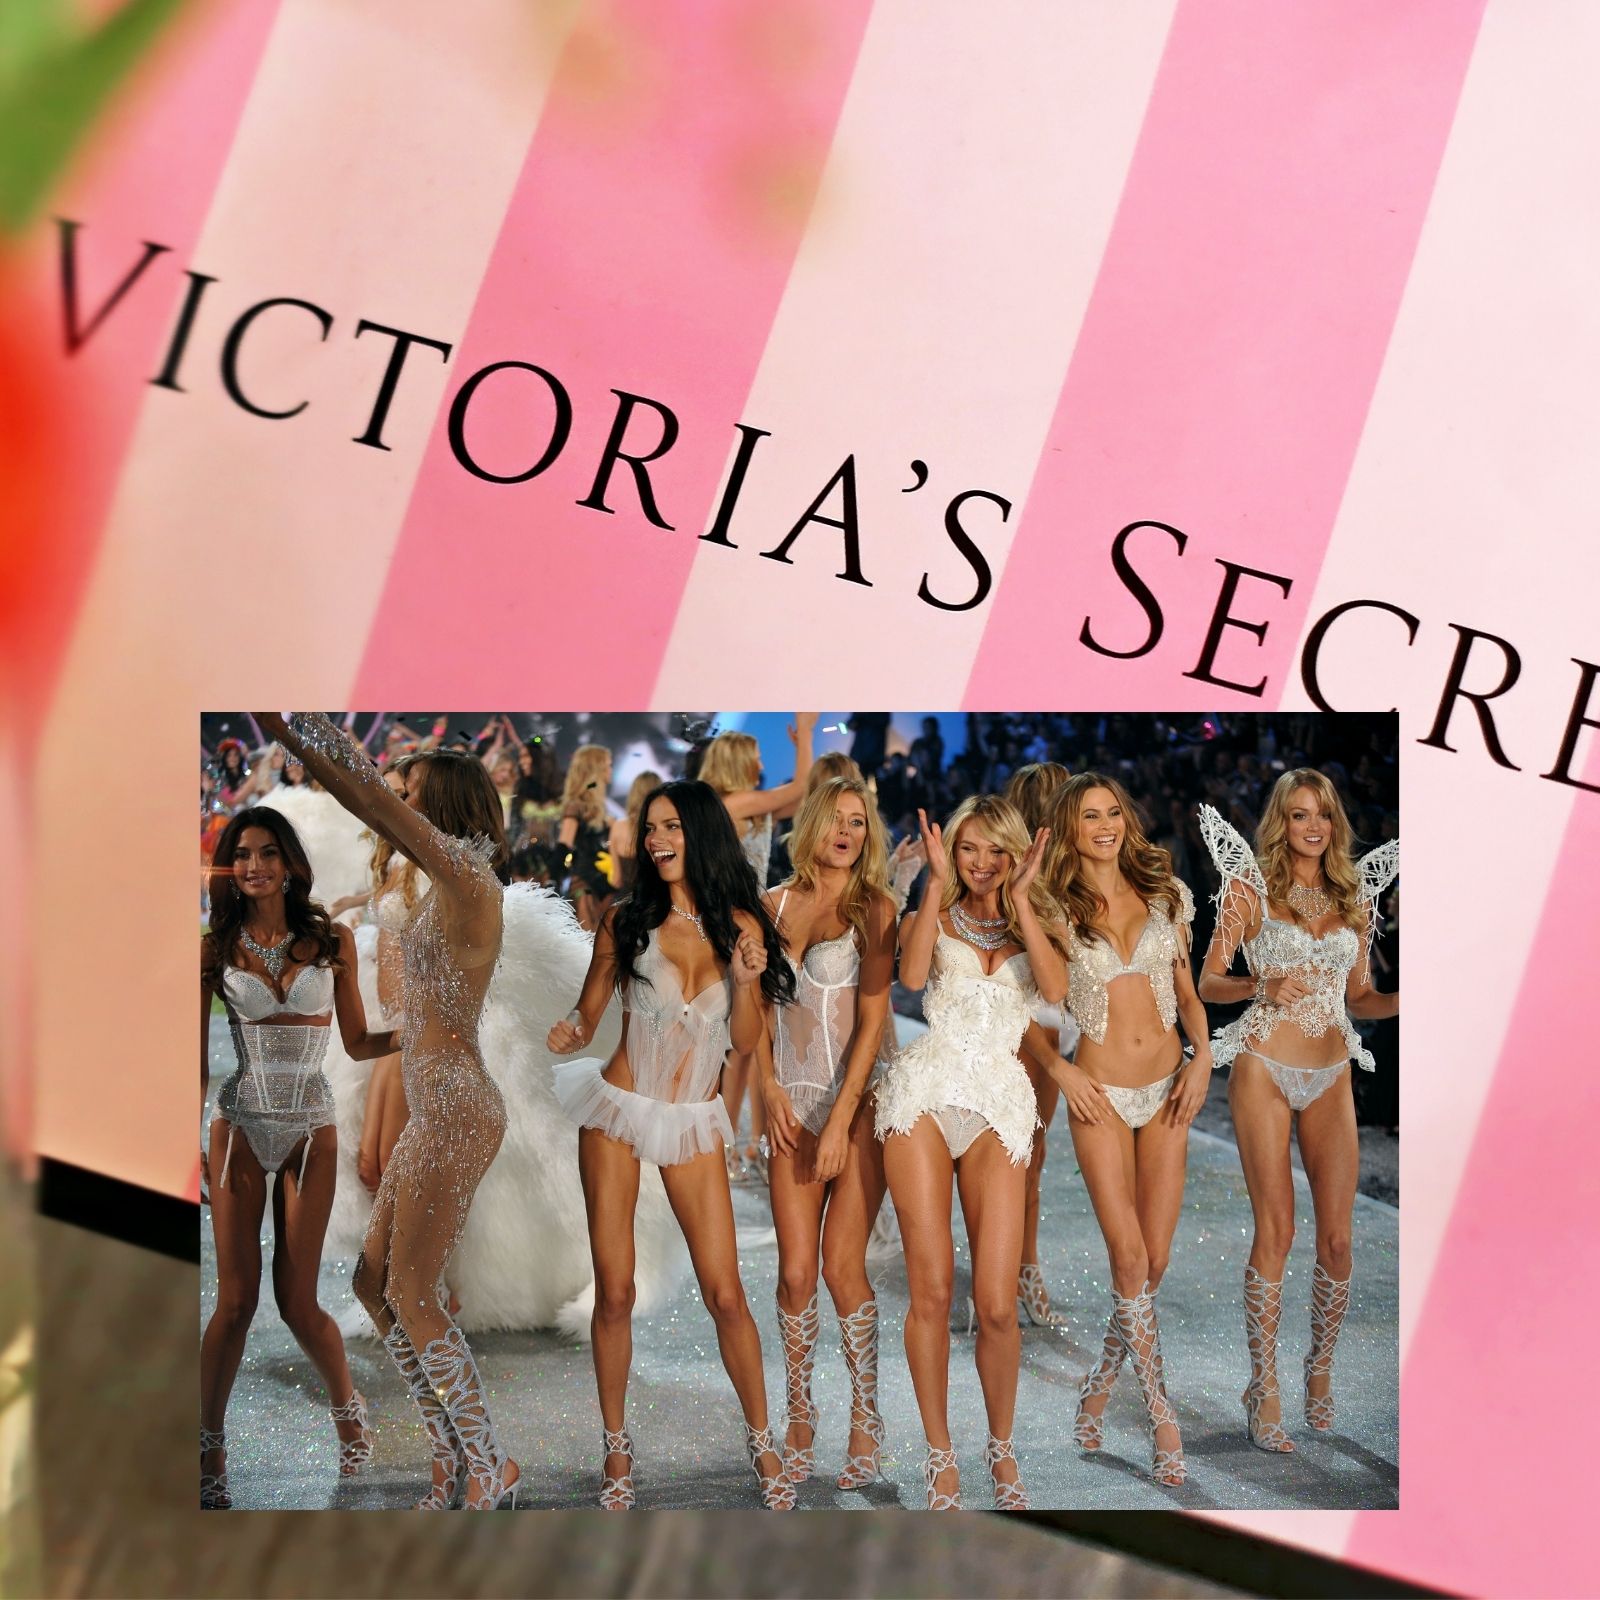 Victoria's Secret Revamp Truly Inclusive or PR Stunt? Body